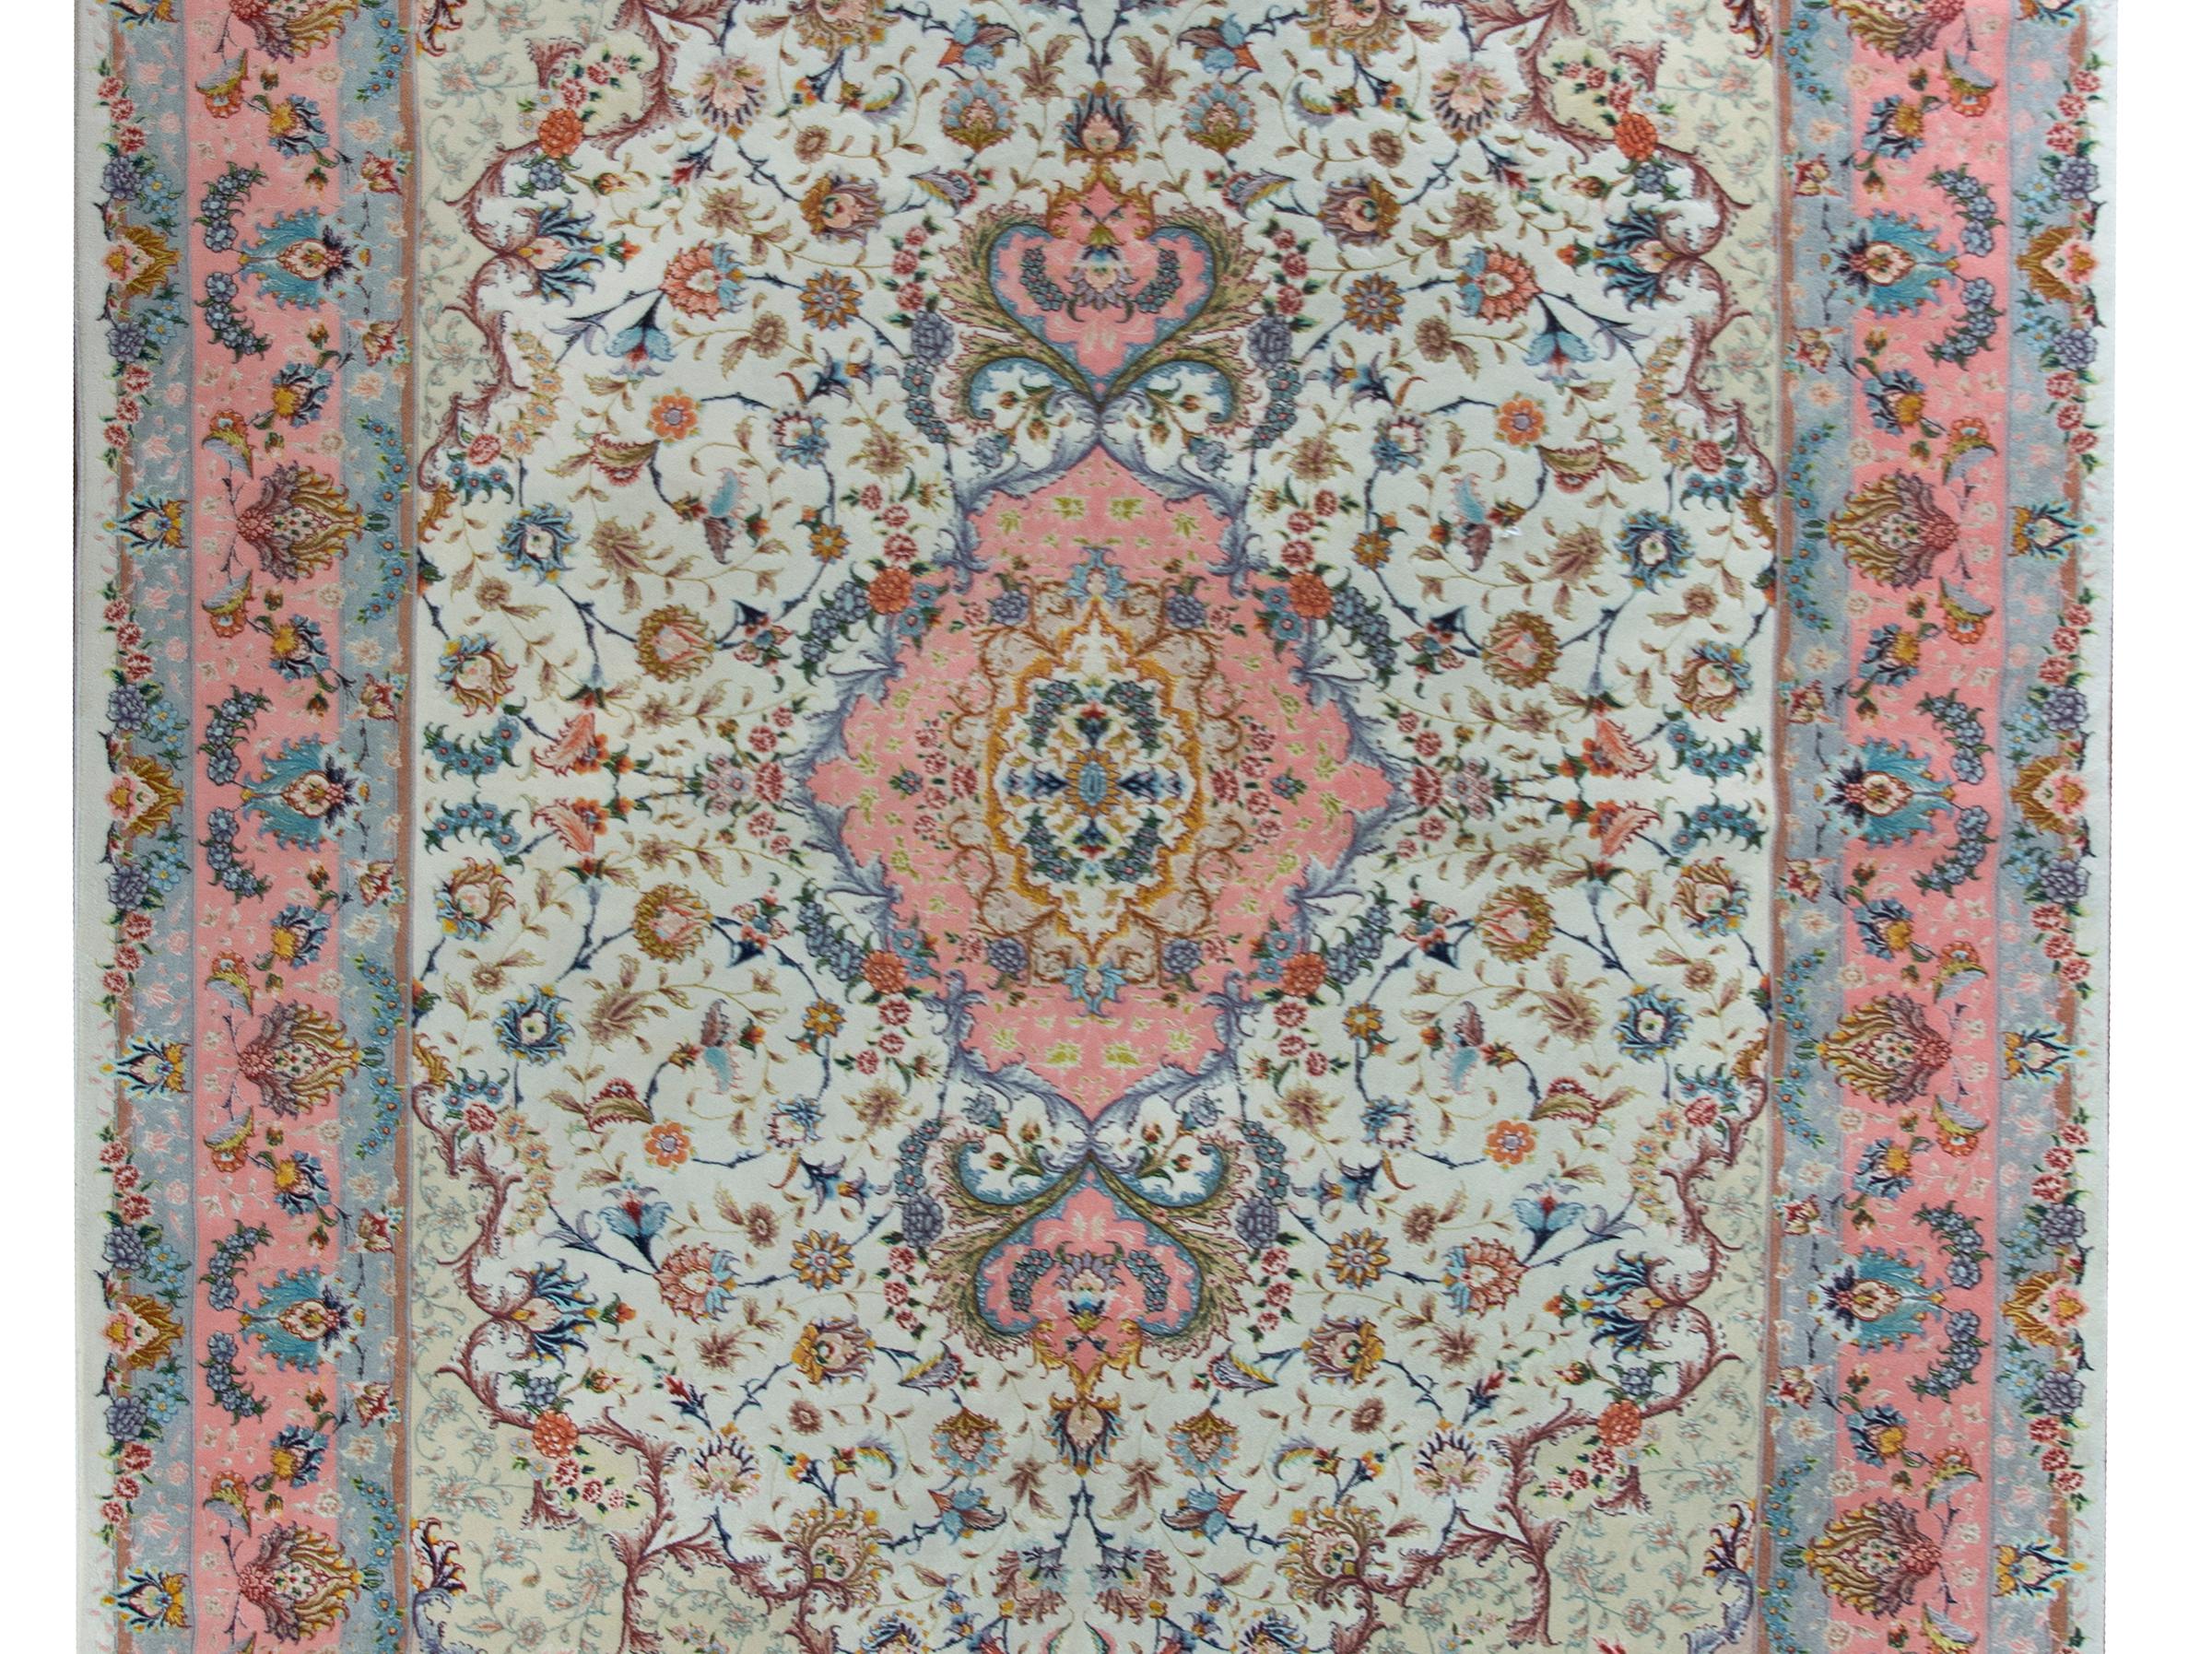 Eine bemerkenswerte späten 20. Jahrhundert persischen Tabriz handgeknüpfte Seide und Wolle Teppich mit einem faszinierenden Muster mit einem zentralen Medaillon leben inmitten einer fein gerenderten Feld von Ranken und Blumen, und umgeben von einem